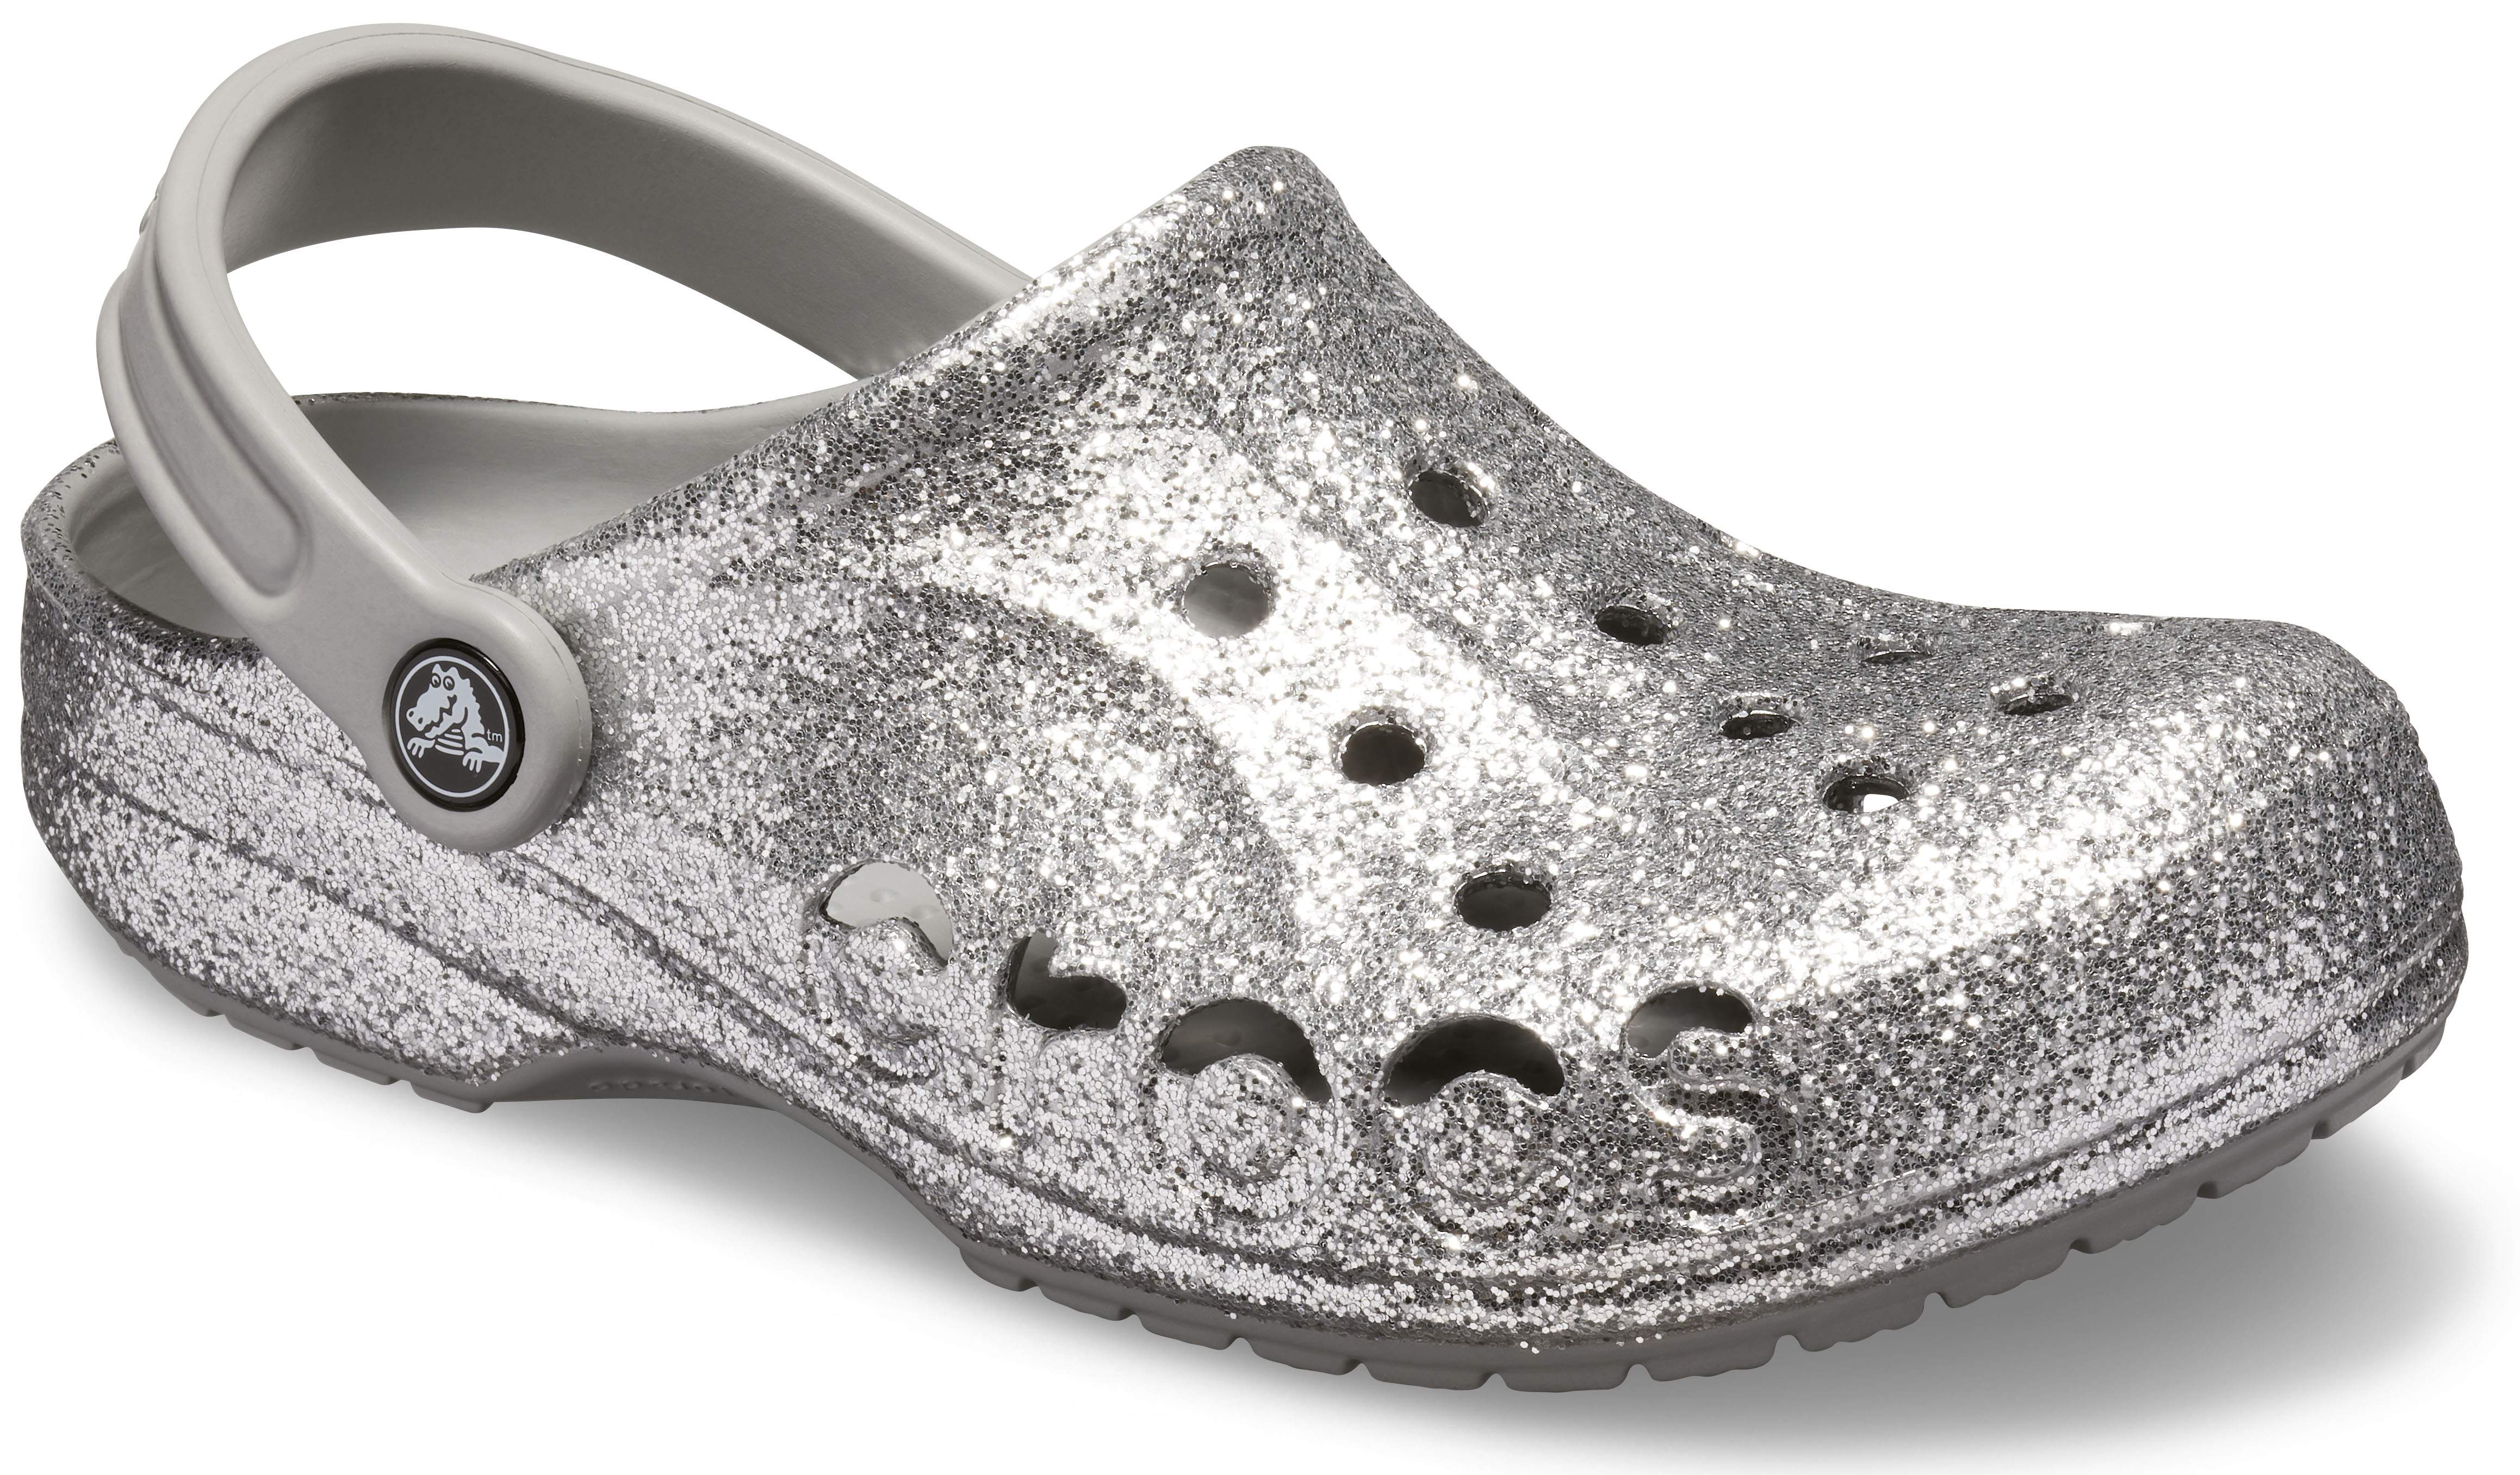 fancy crocs shoes